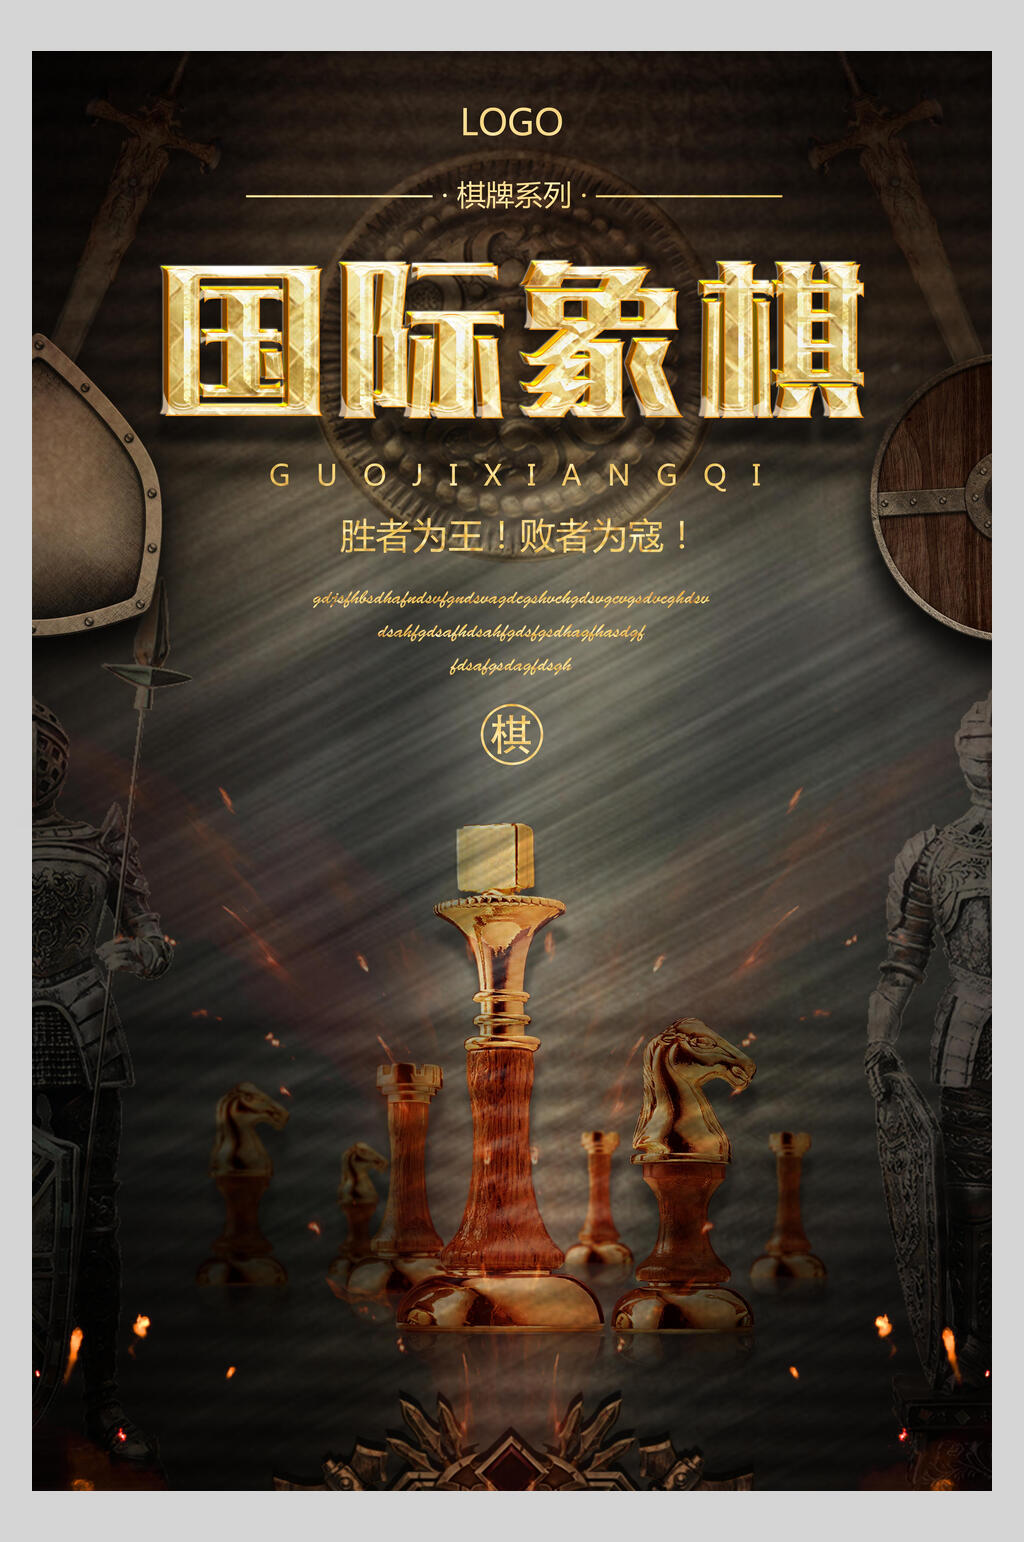 众图网独家提供黑金国际象棋棋牌室招生海报素材免费下载,本作品是由